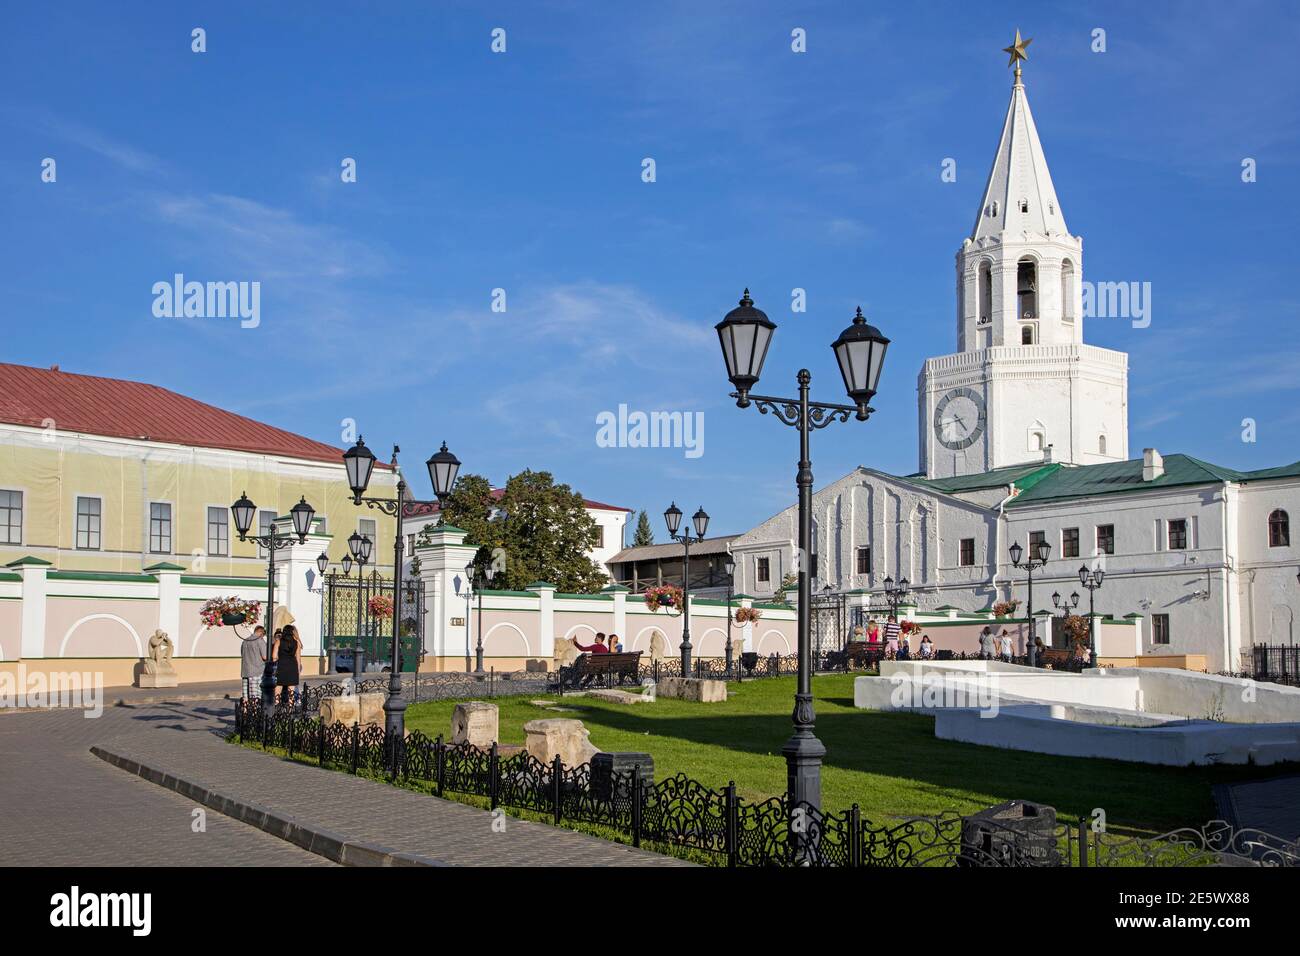 Tour Spasskaya à huit côtés du XVIe siècle, clocher blanc / campanile et entrée principale du Kremlin de Kazan dans la ville de Kazan, Tatarstan, Russie Banque D'Images